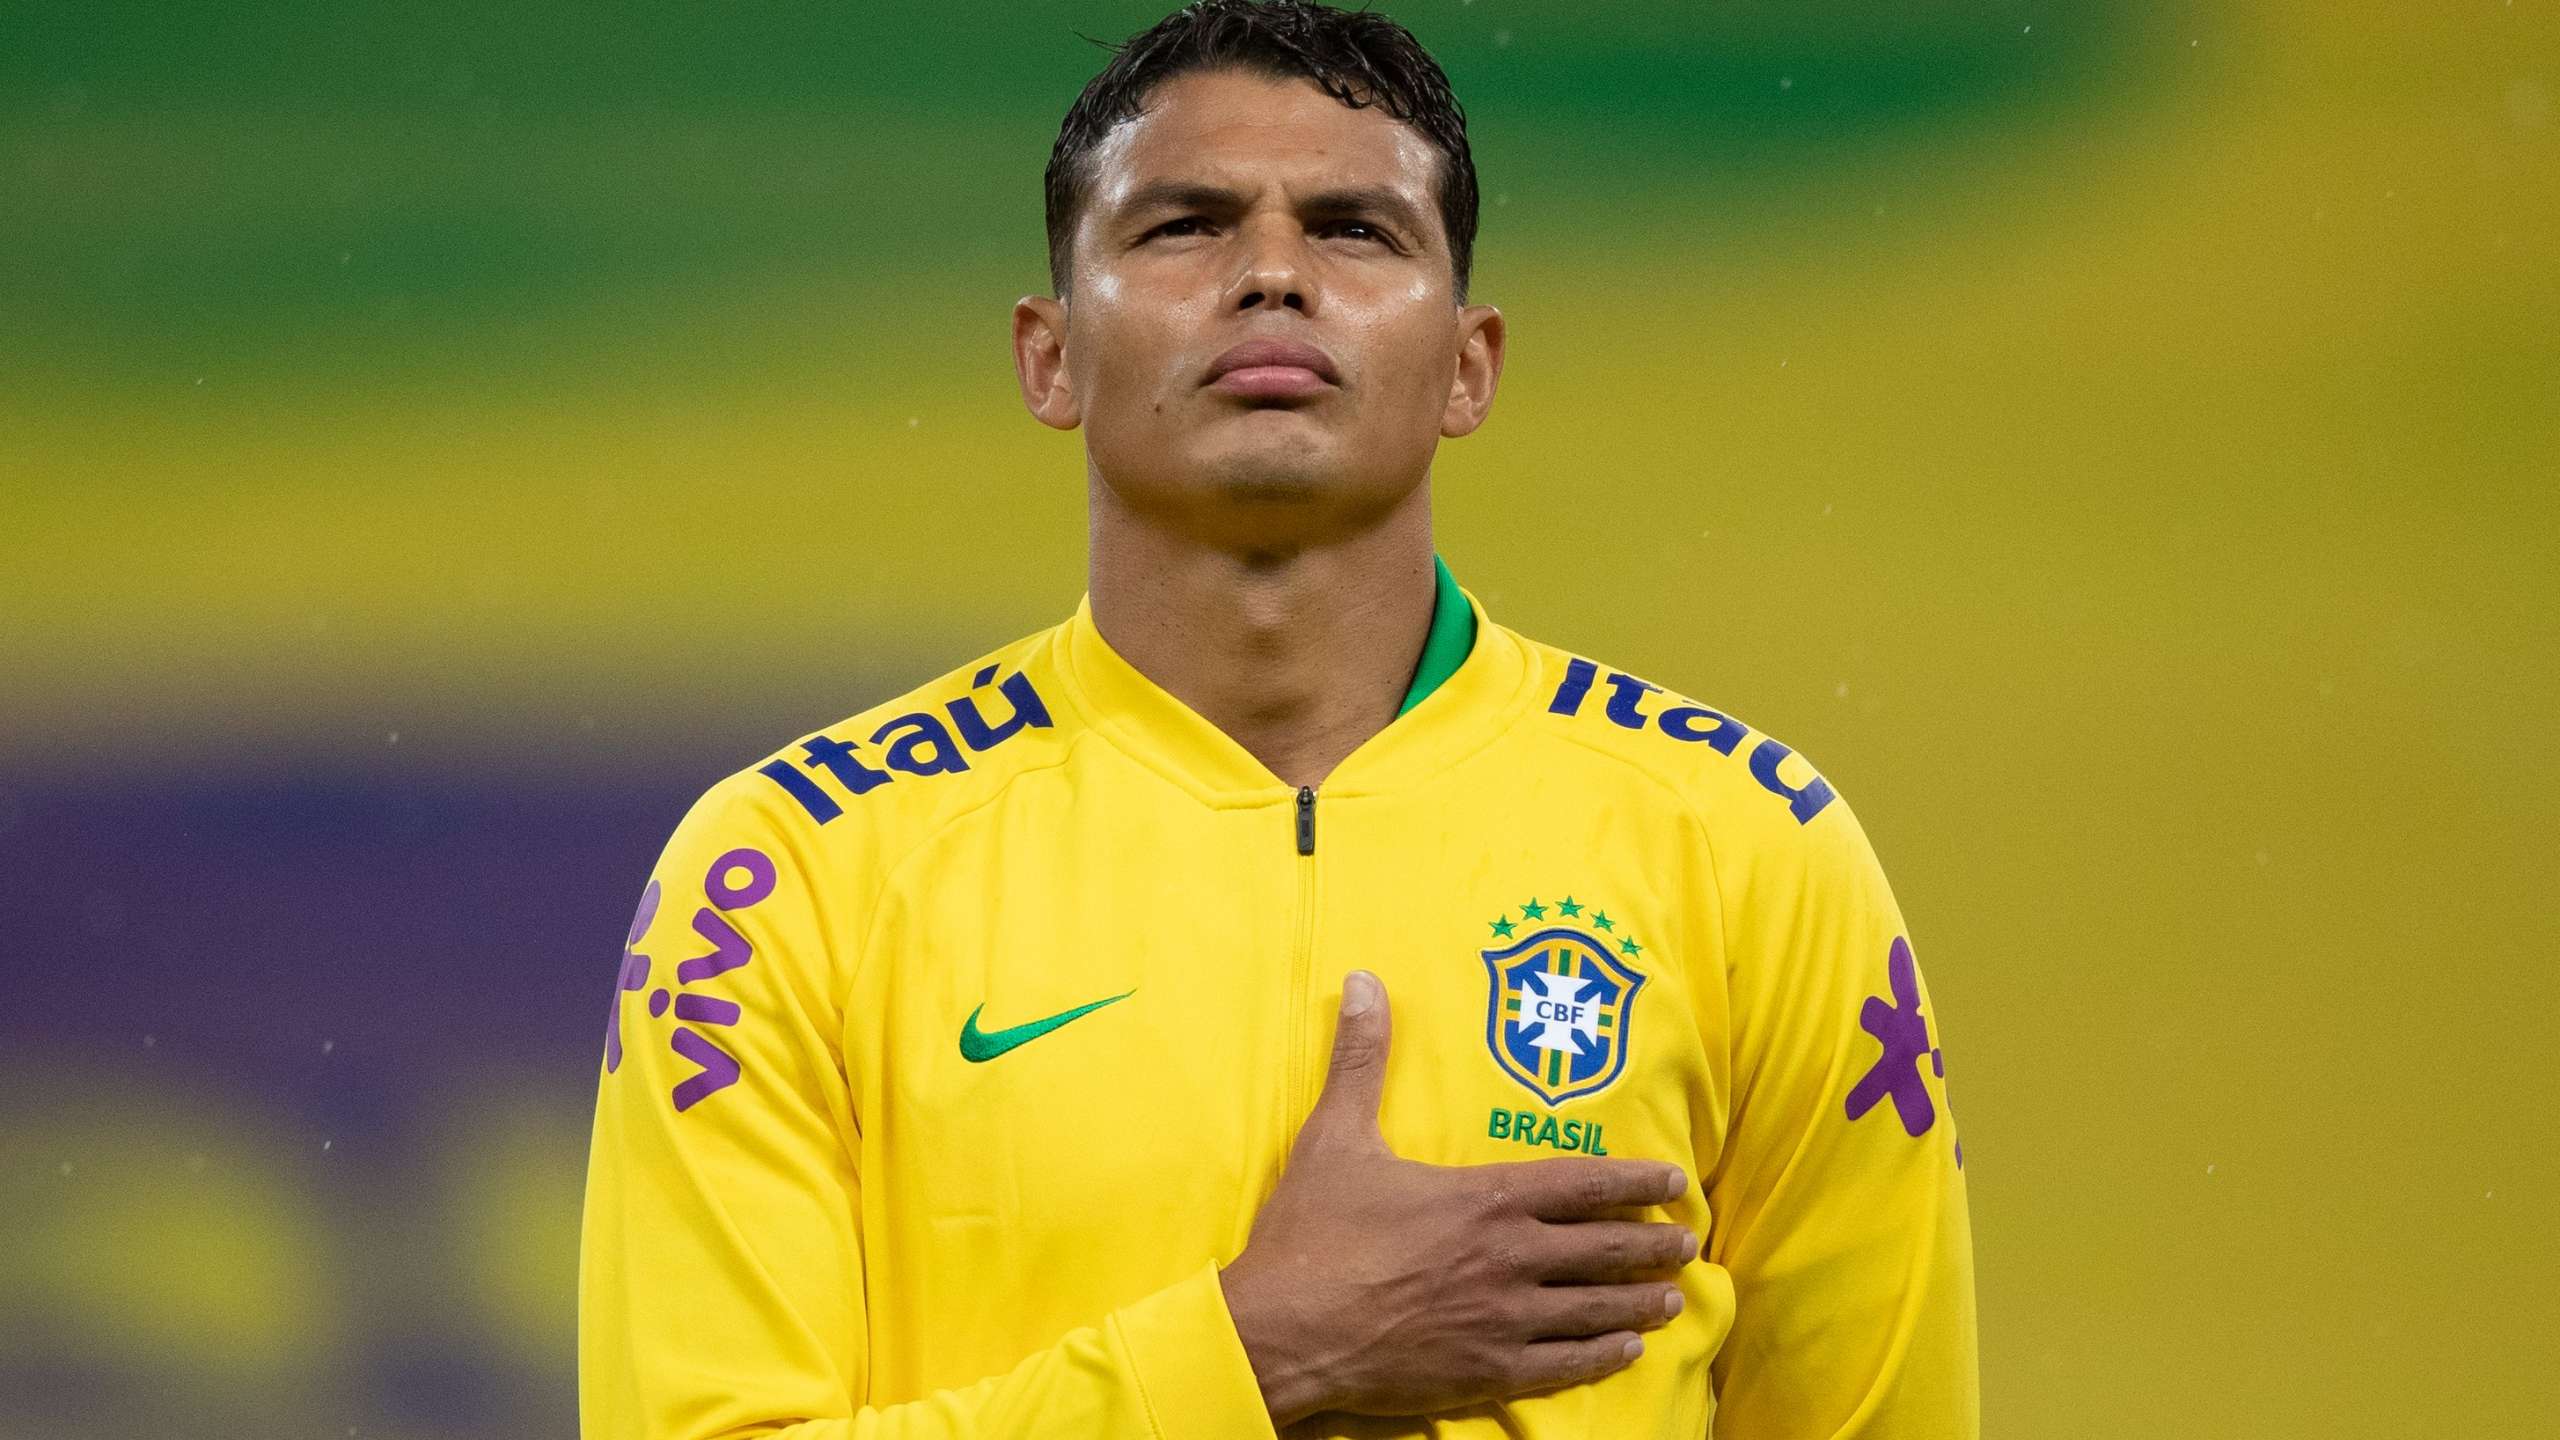 Capitão na decisão, Thiago Silva espera final equilibrada